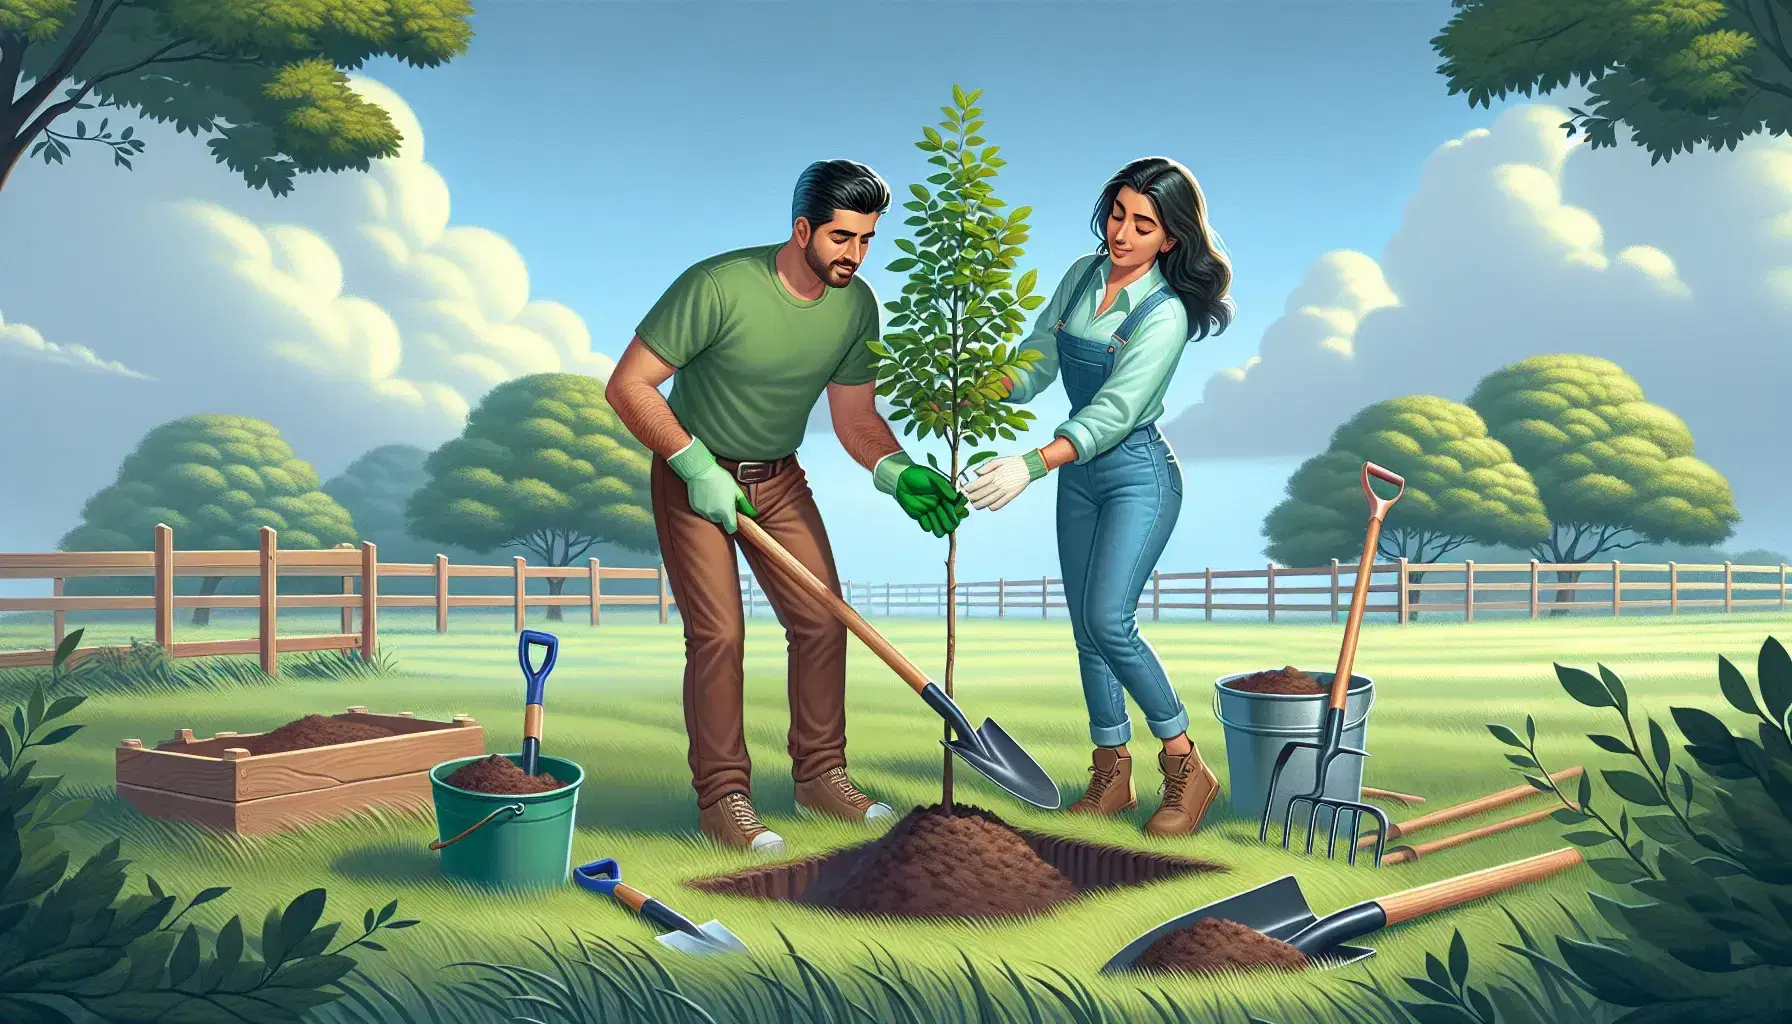 Uomo ispanico e donna mediorientale piantano giovane albero su prato, con attrezzi da giardinaggio e recinzione in legno sullo sfondo.